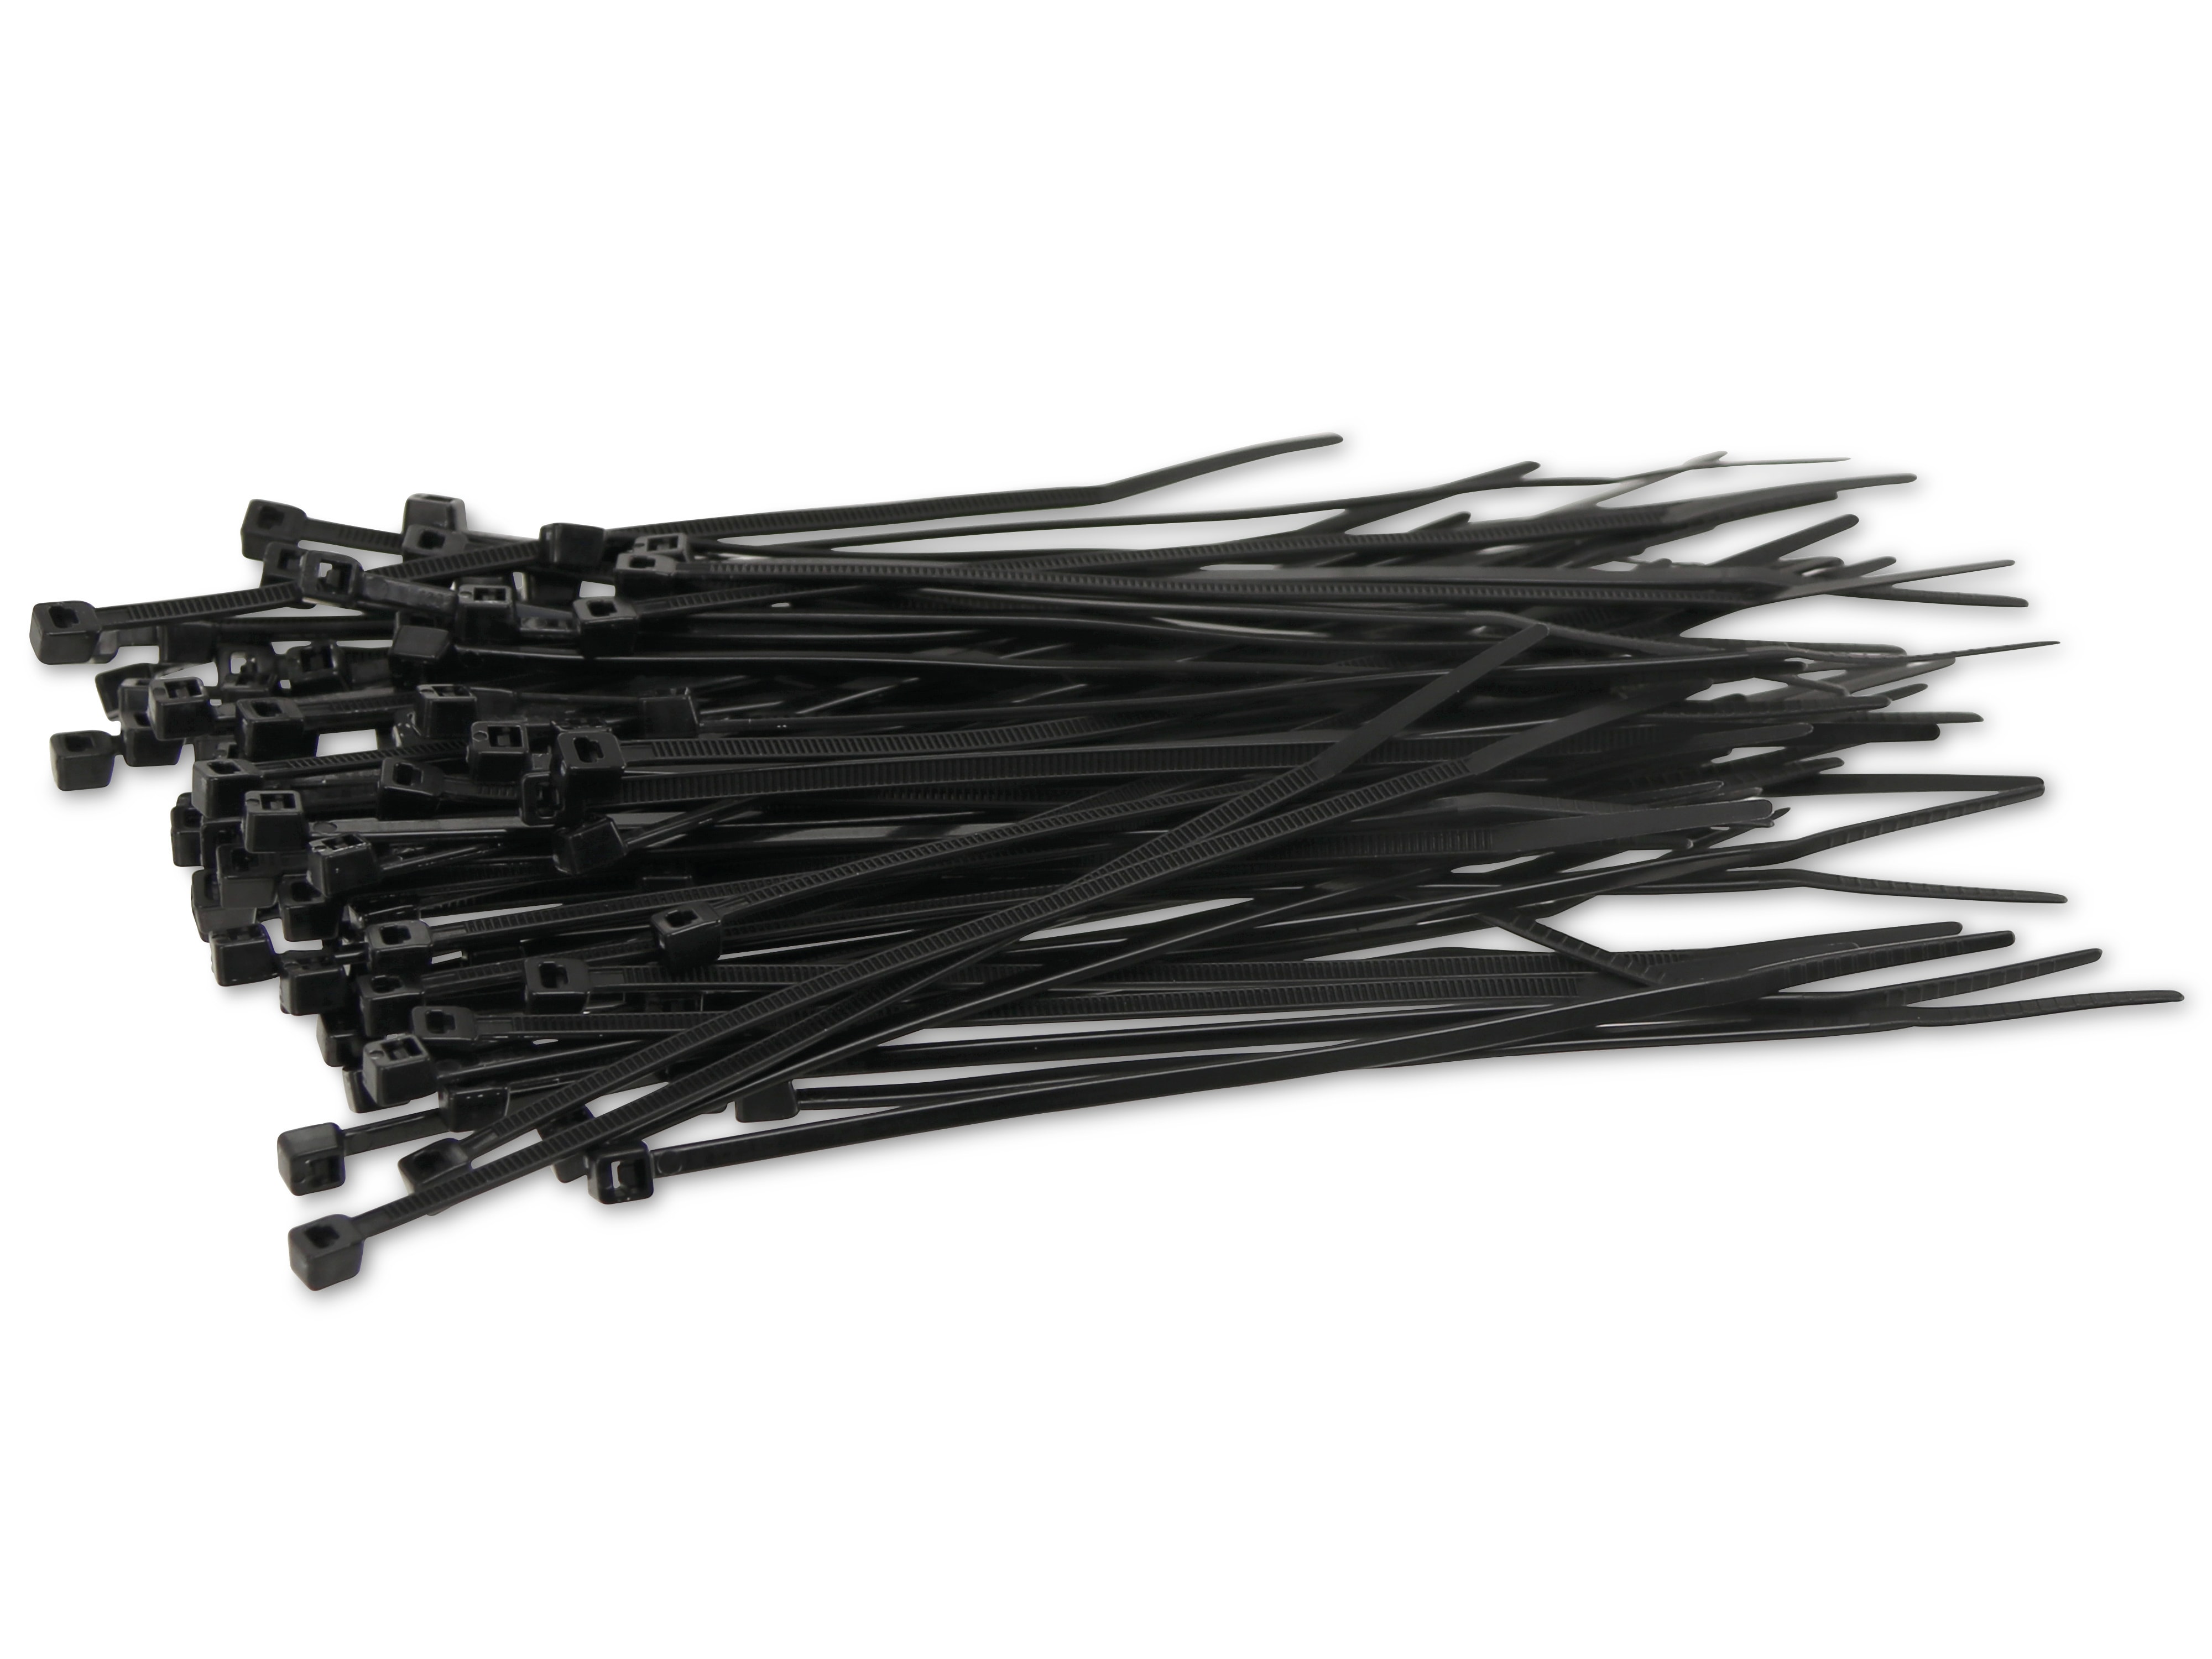 KSS Kabelbinder-Sortiment Polyamid 6.6, schwarz, 120x2,5, UV-beständig, 100 Stück